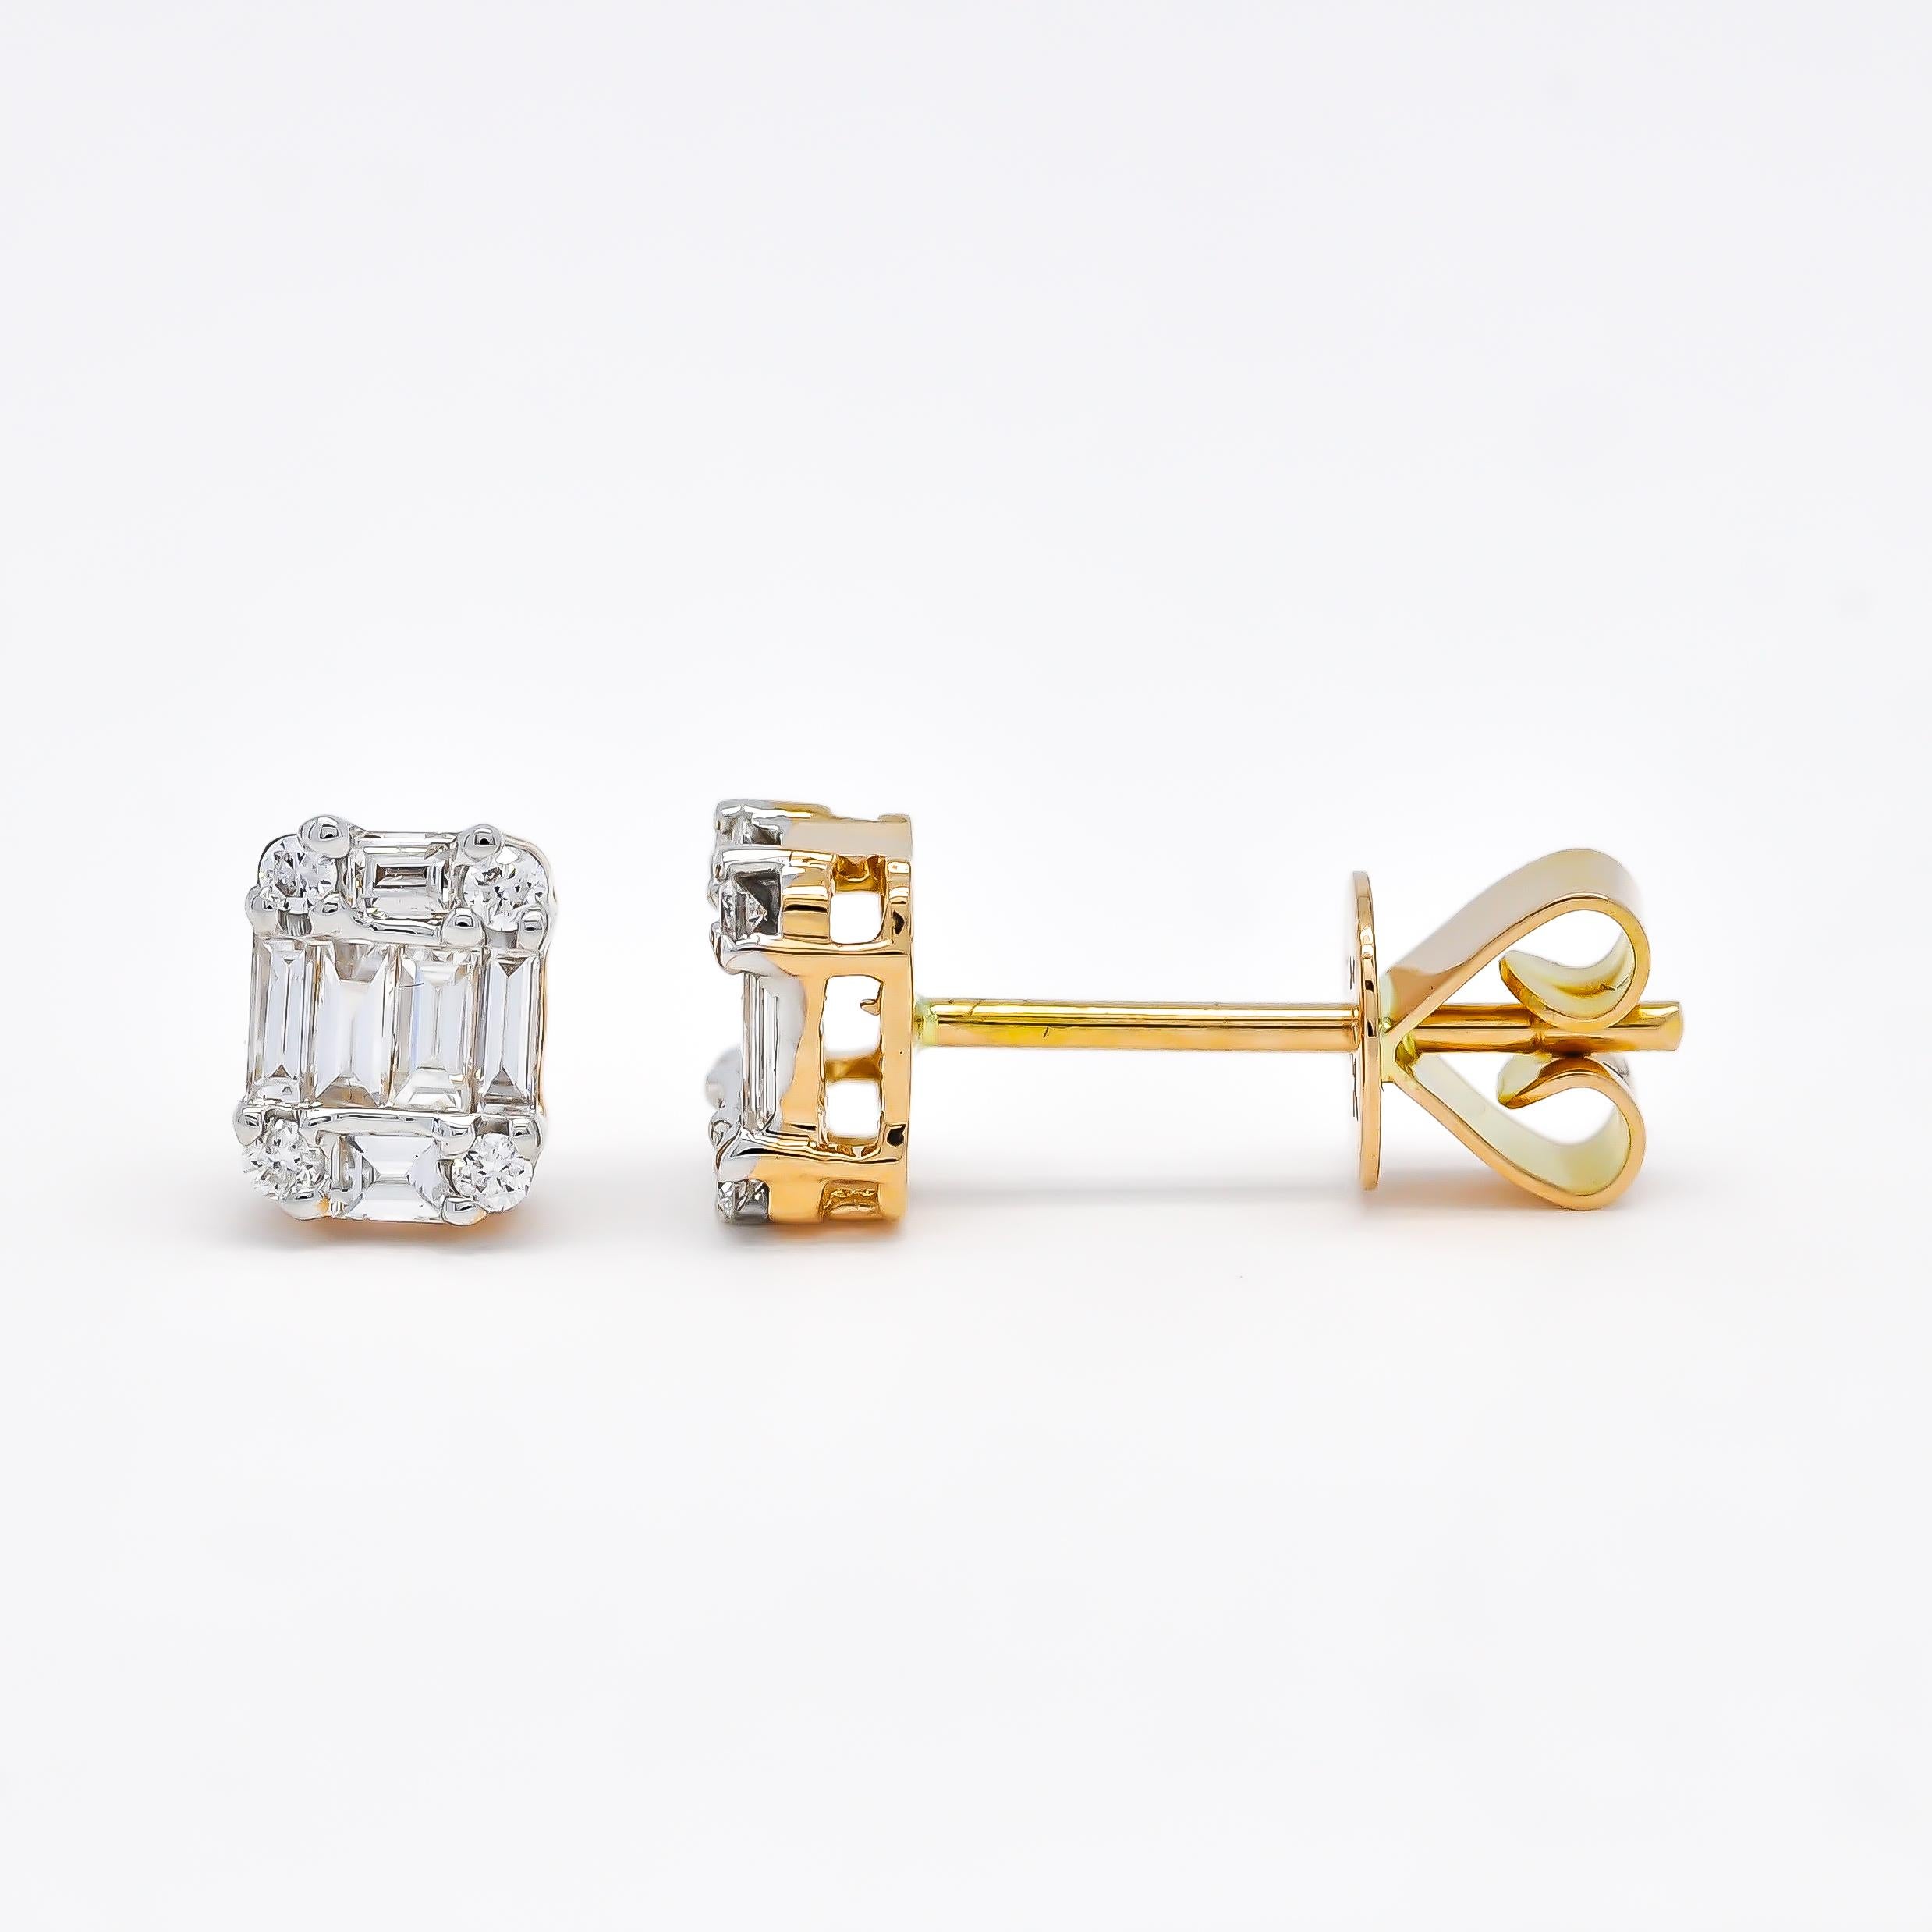 Ces boucles d'oreilles présentent un design carré avec une grappe de diamants naturels de taille baguette et ronde sertis dans de l'or blanc 18KT. Les diamants sont soigneusement sélectionnés pour leur qualité, garantissant un éclat brillant et une